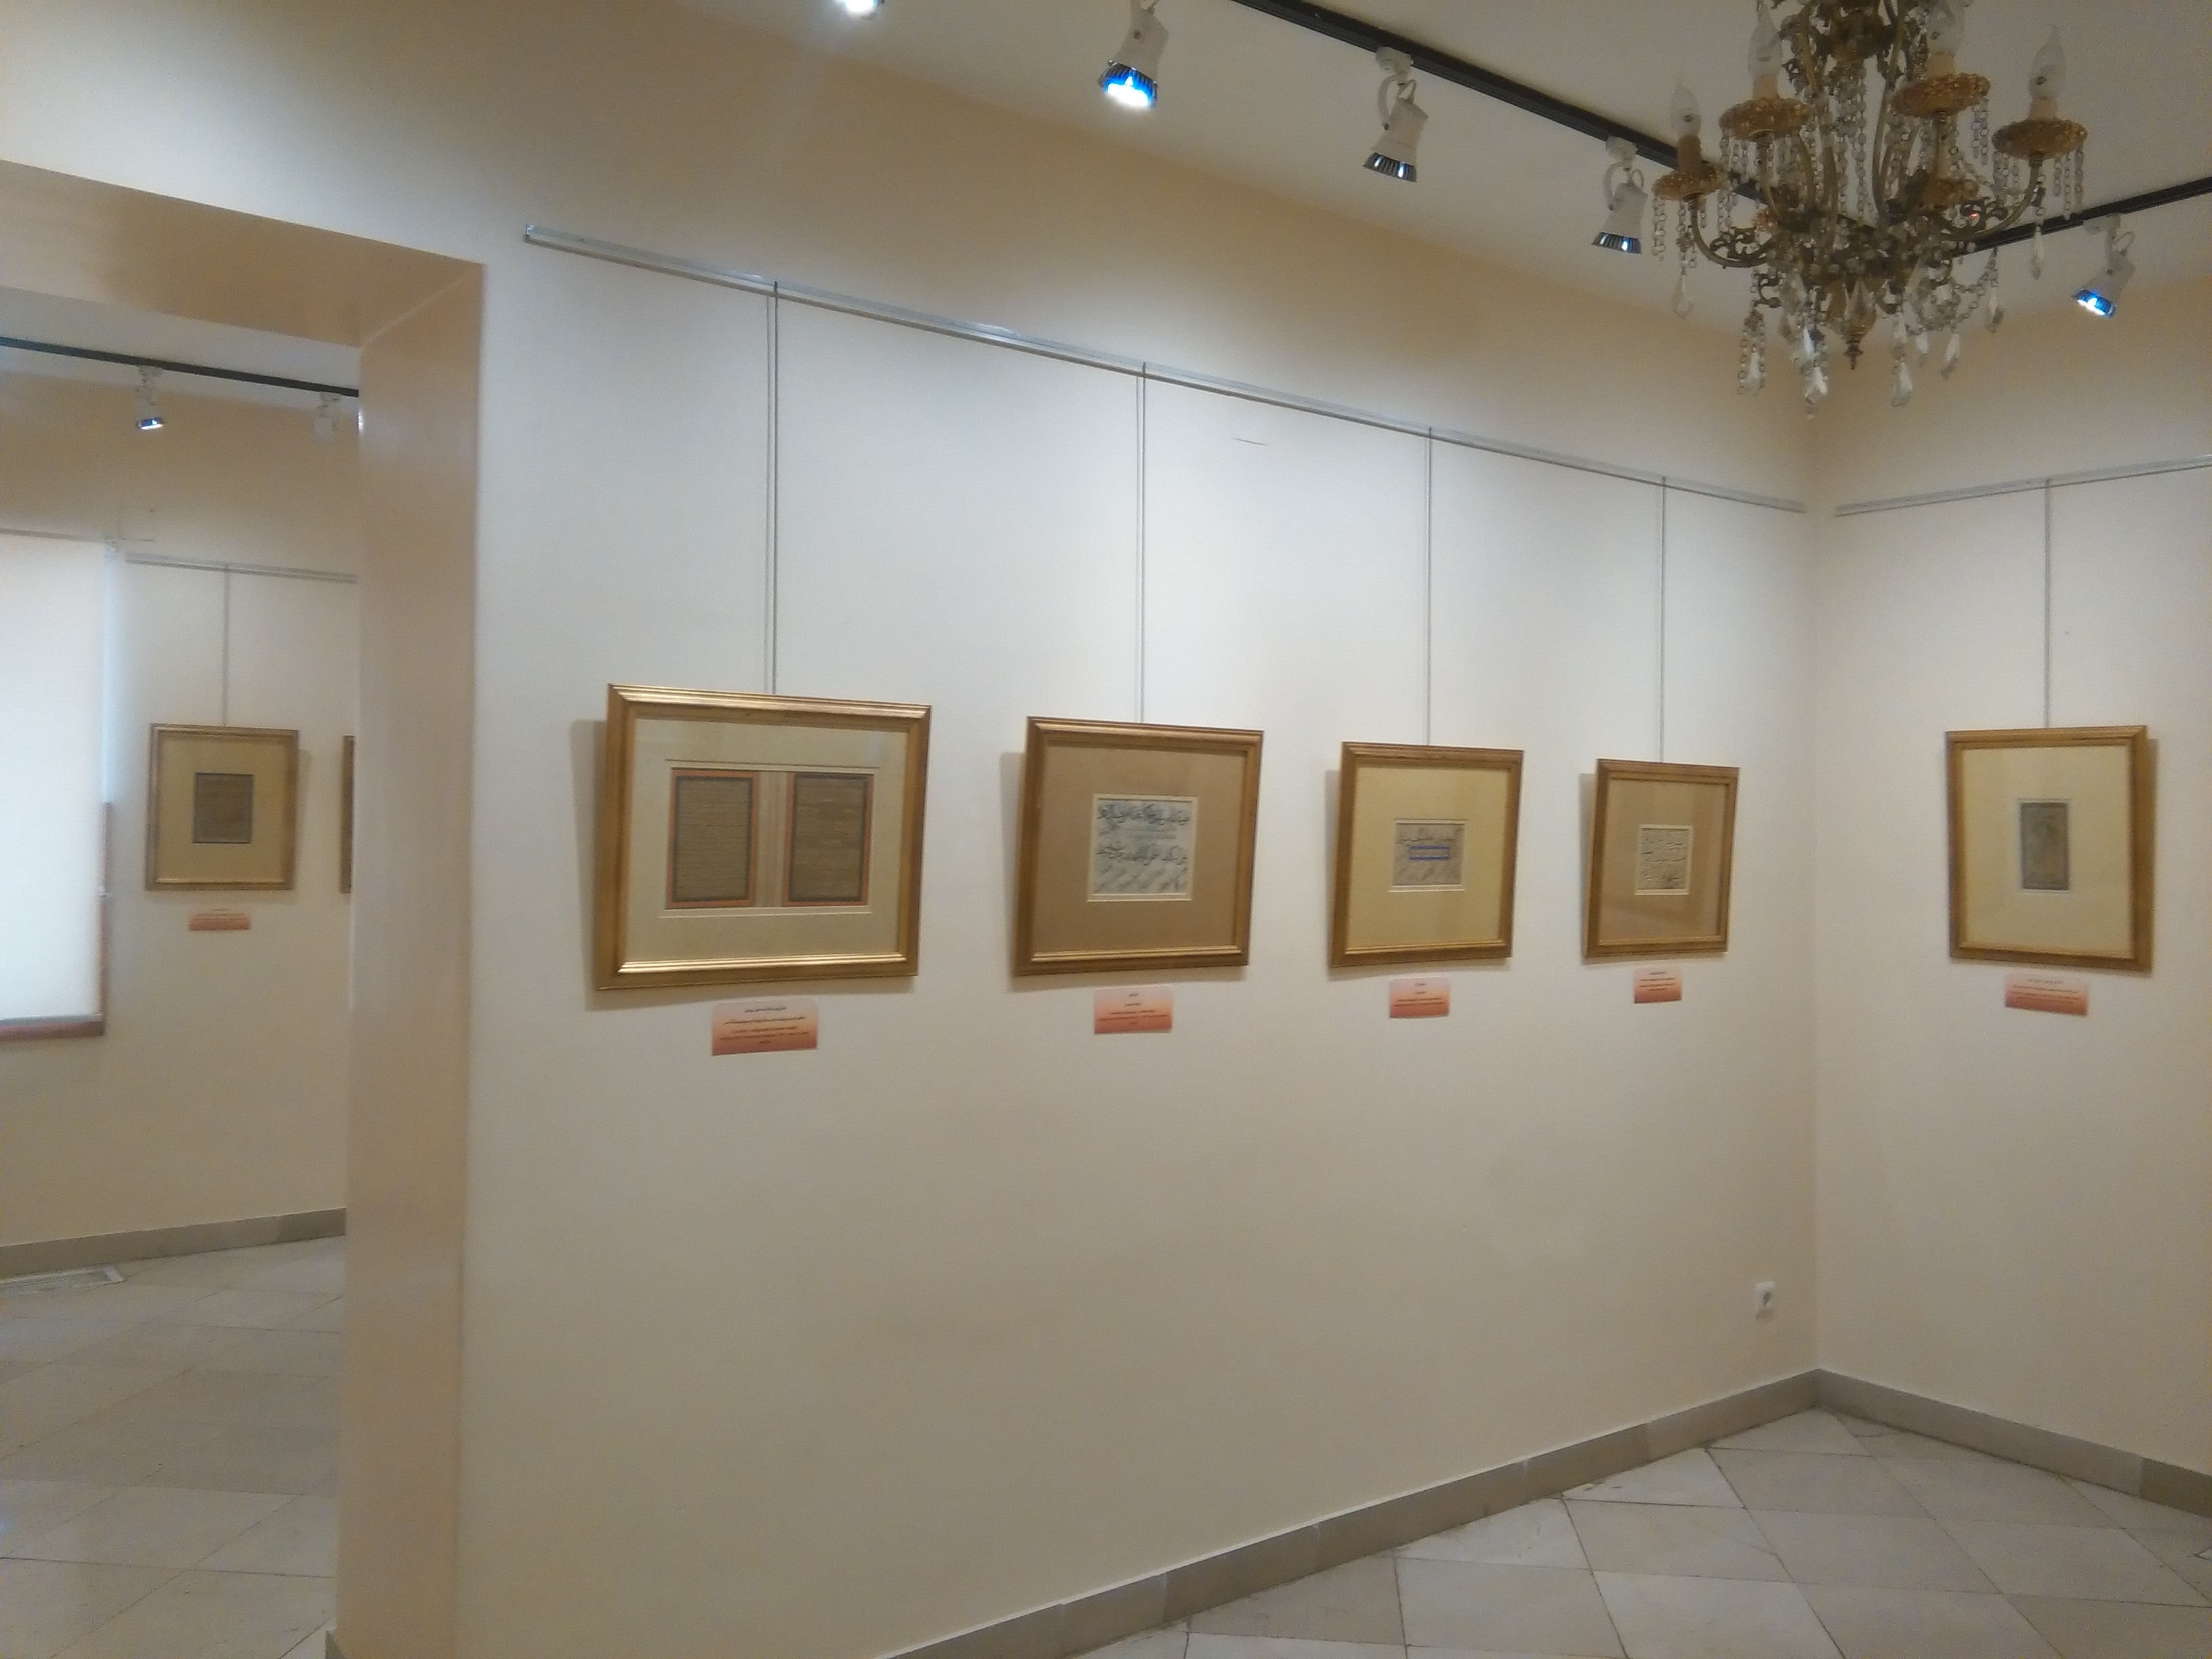 طبقه اول سالن چهارم: خطوط تفننی، خطوط اسلامی